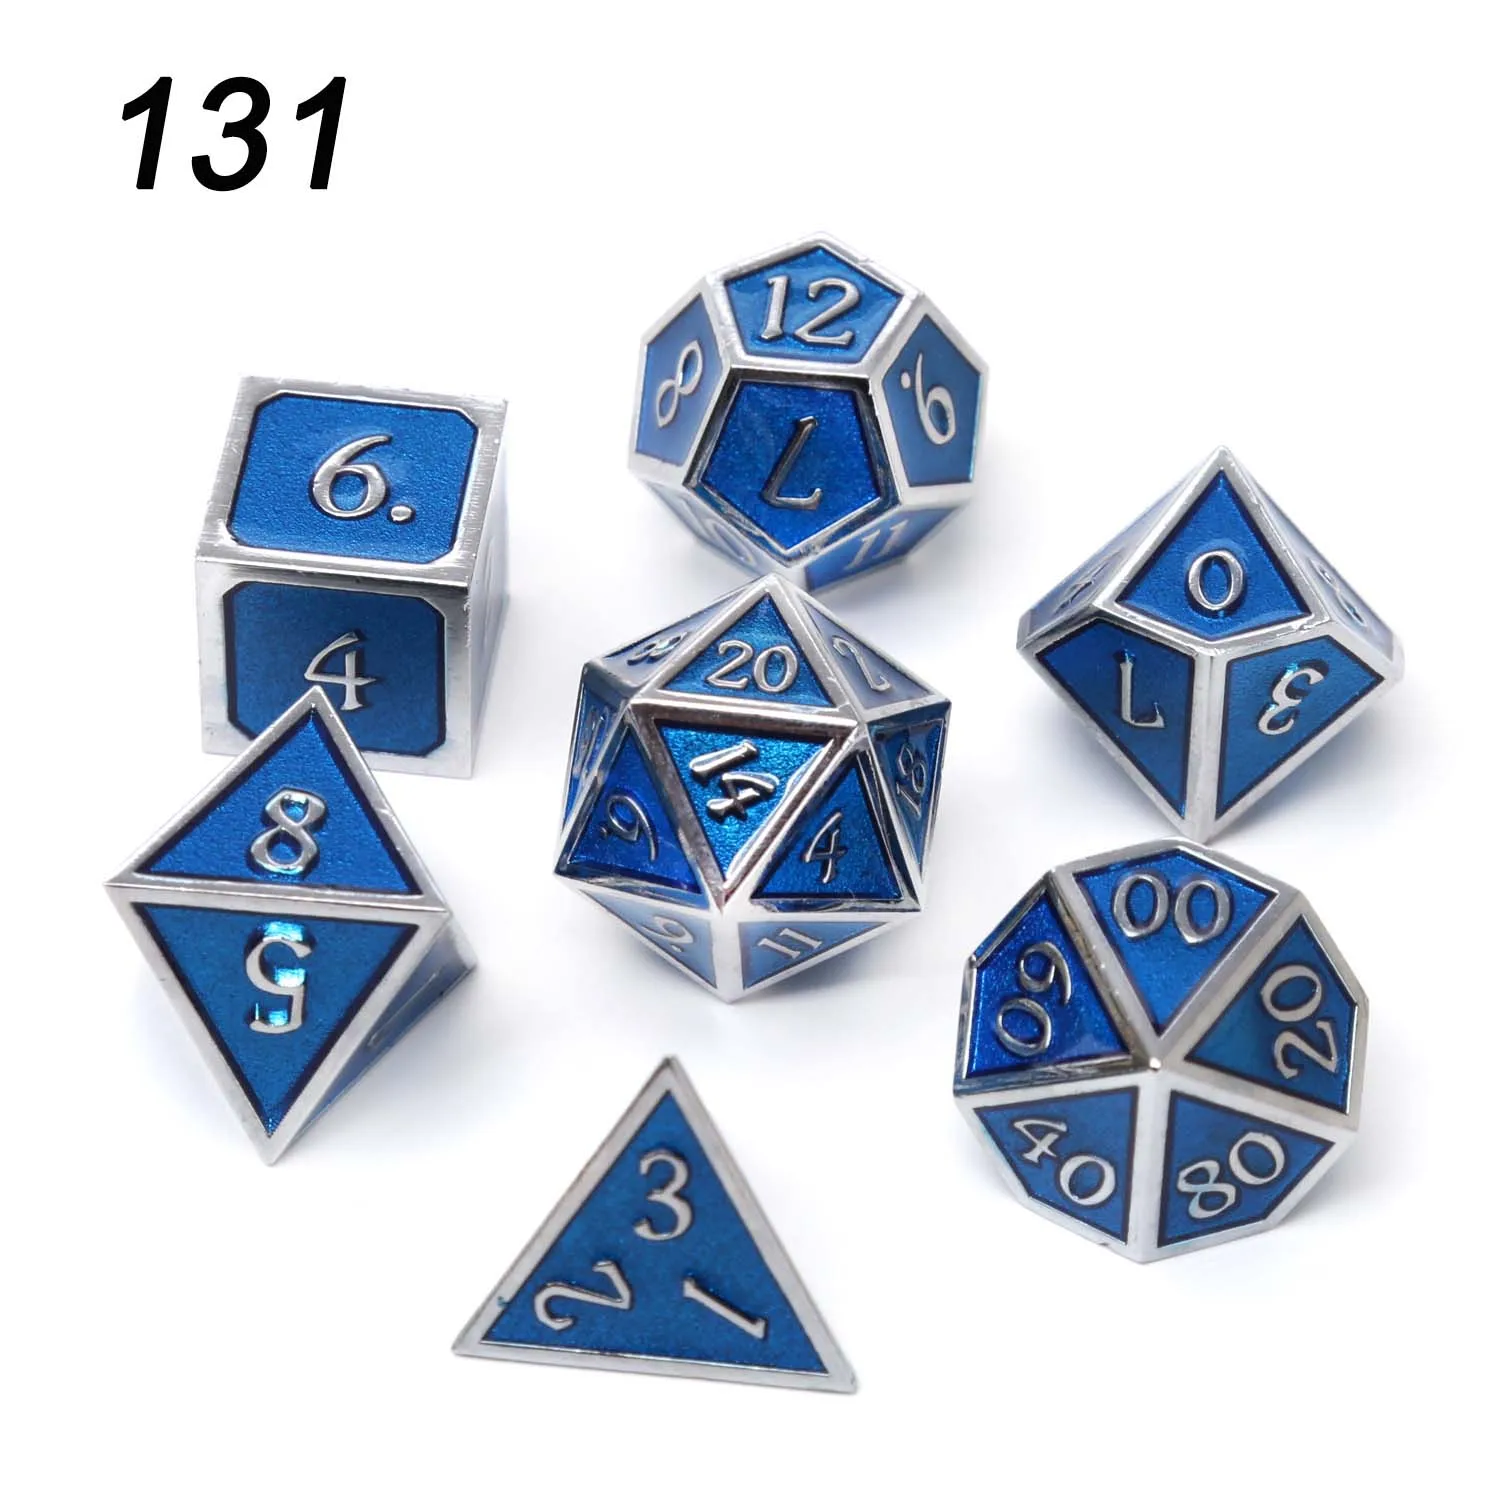 Chengshuo игральные кости DND Металл РГП набор многогранных подземелья и дракон d20 8 синий настольные игры цинковый сплав Цифровой узор в кости - Цвет: 131